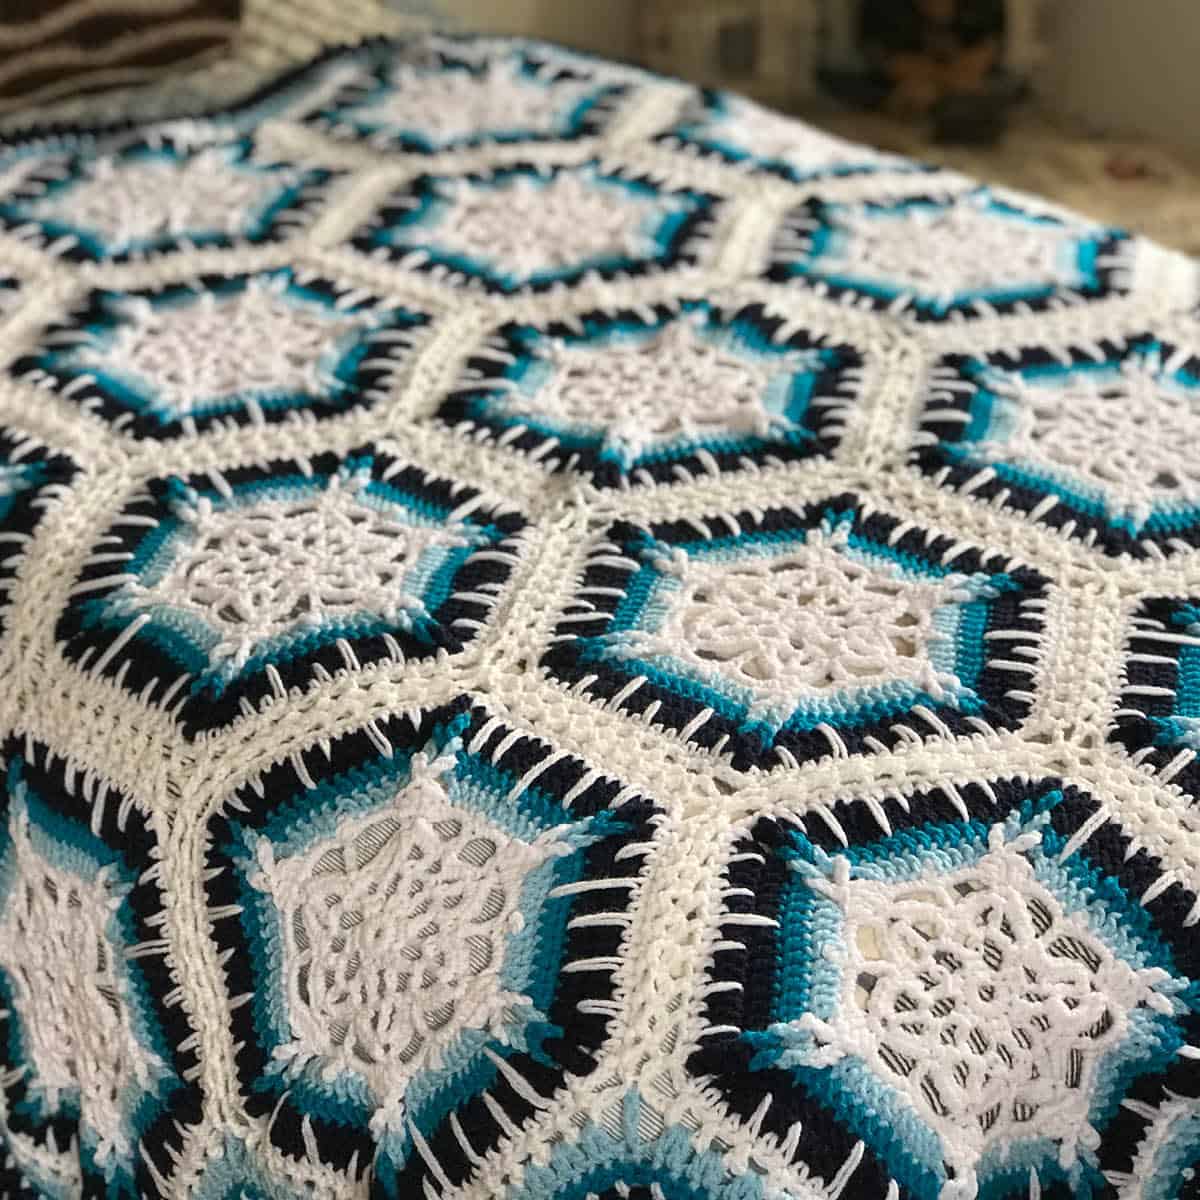 Crochet Winter Blizzard Blanket Pattern by Daniel Zondervan